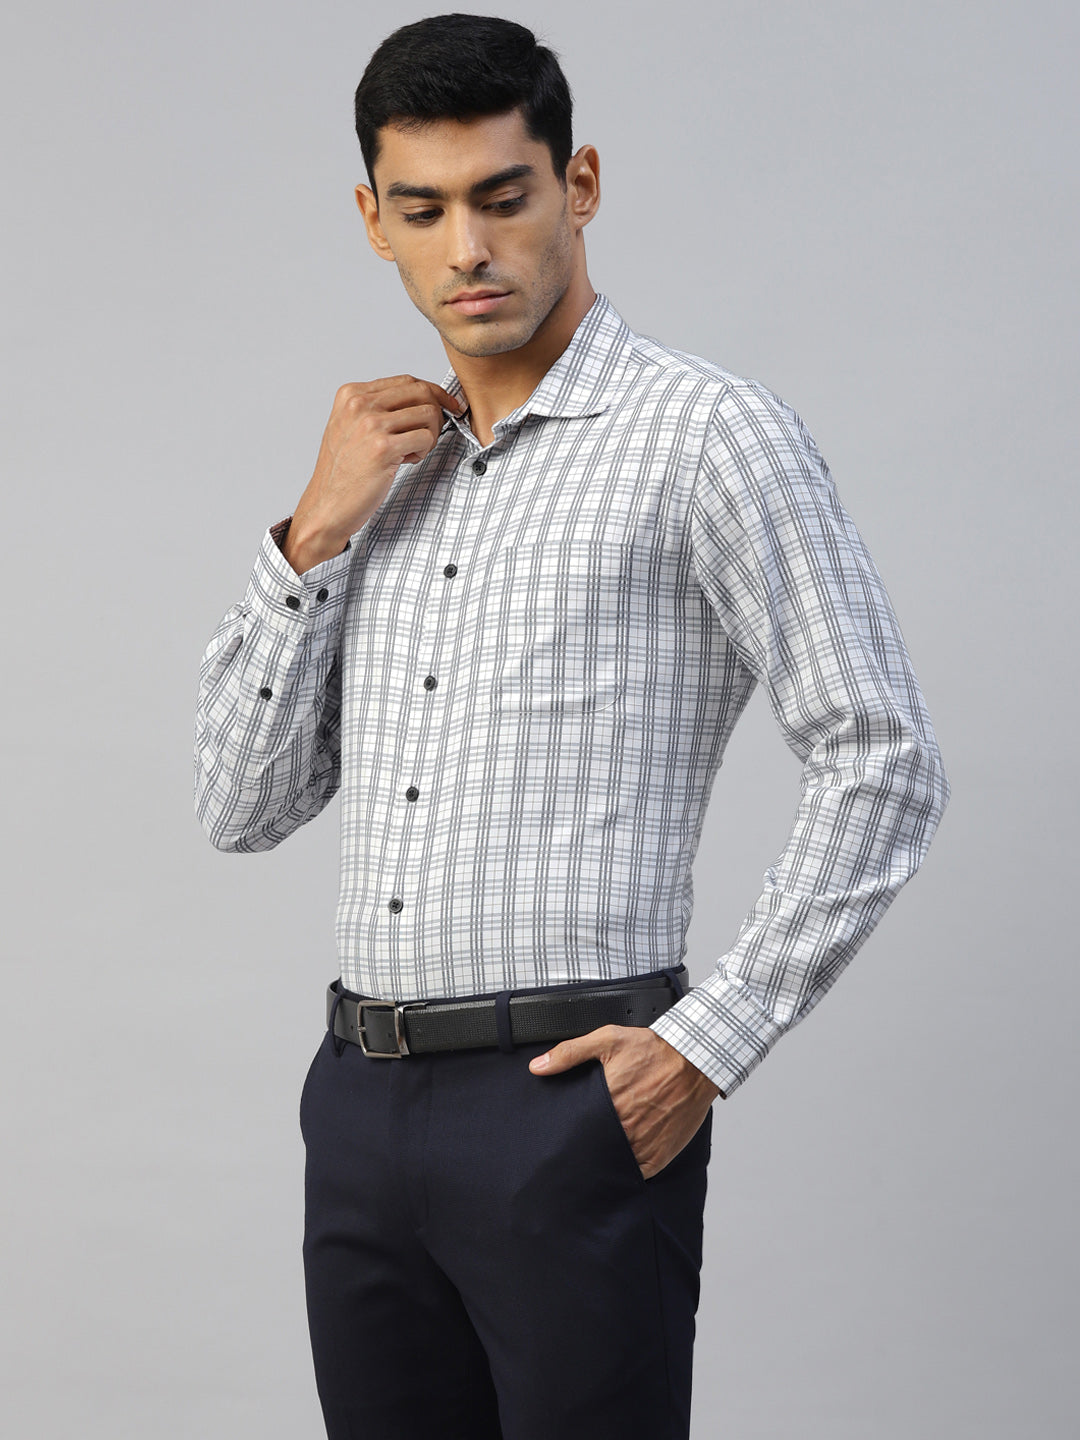 Don Vino Men's White & Grey Checks Slim Fit Shirt